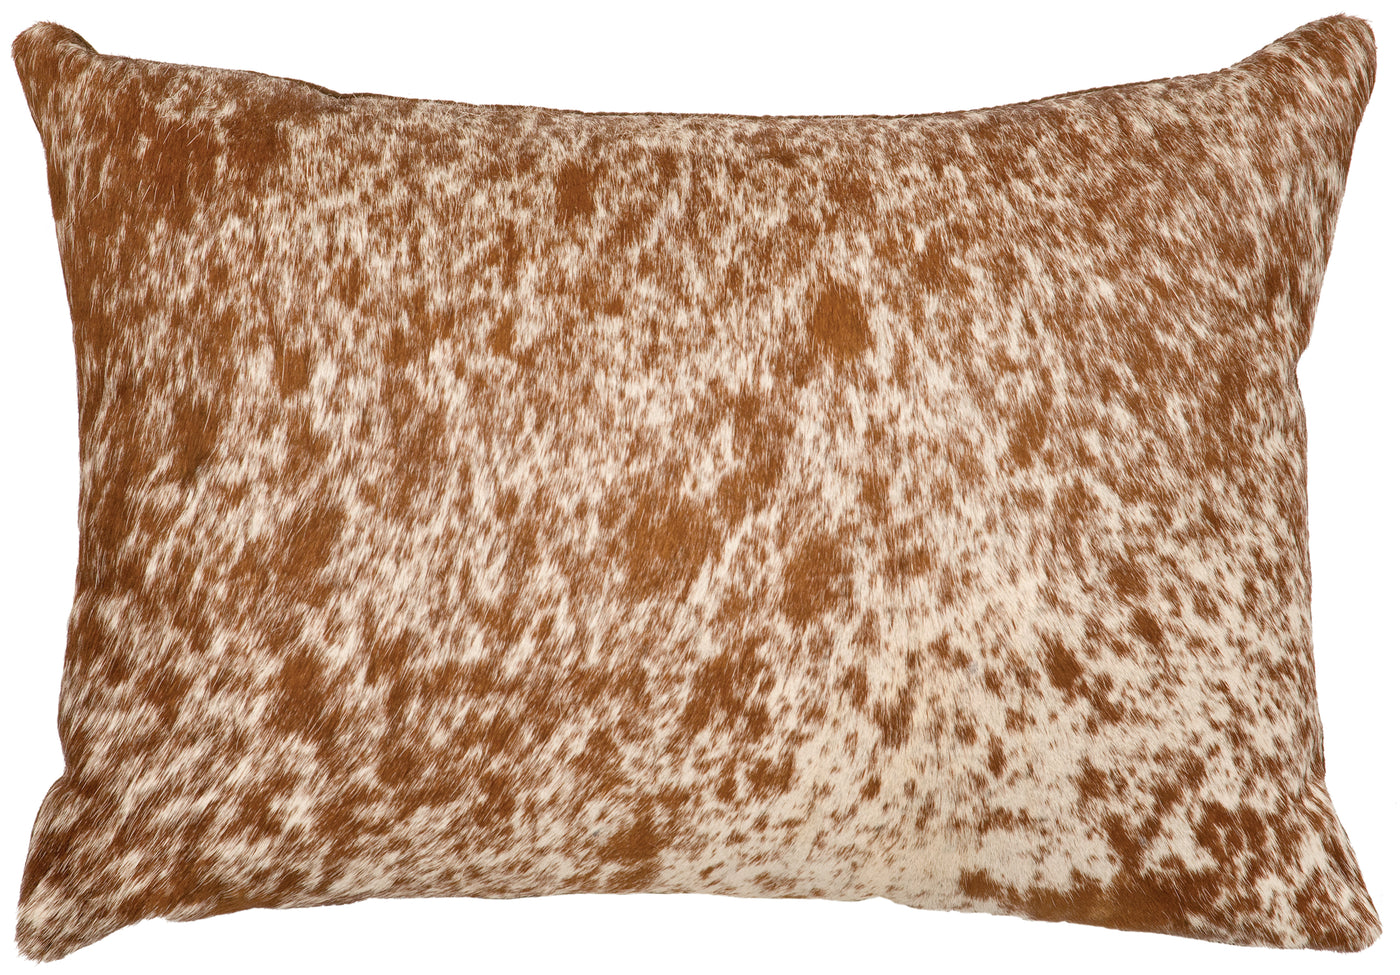 Canvello 斑點淺棕色皮革枕頭 - 織物背面 - 16 英寸 x 16 英寸